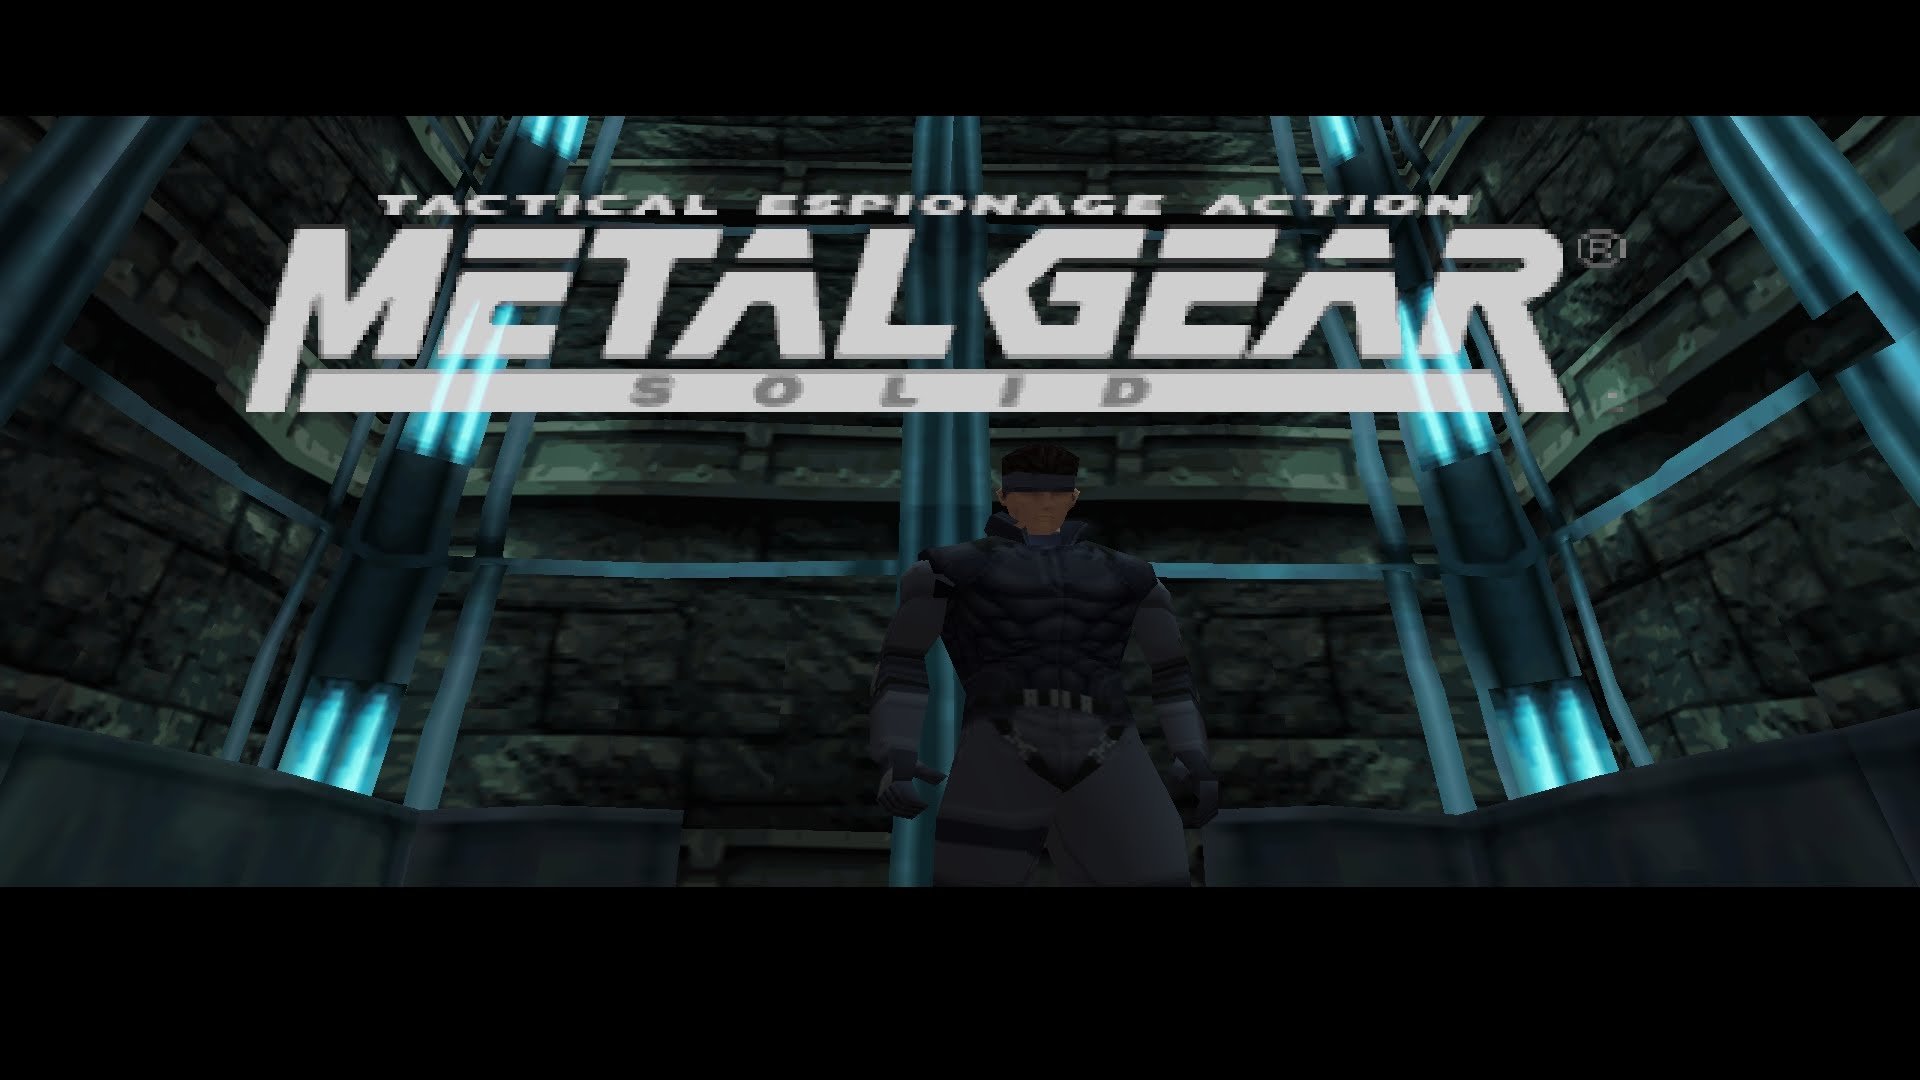 Recrean la introducción de Metal Gear Solid con Unreal Engine 4